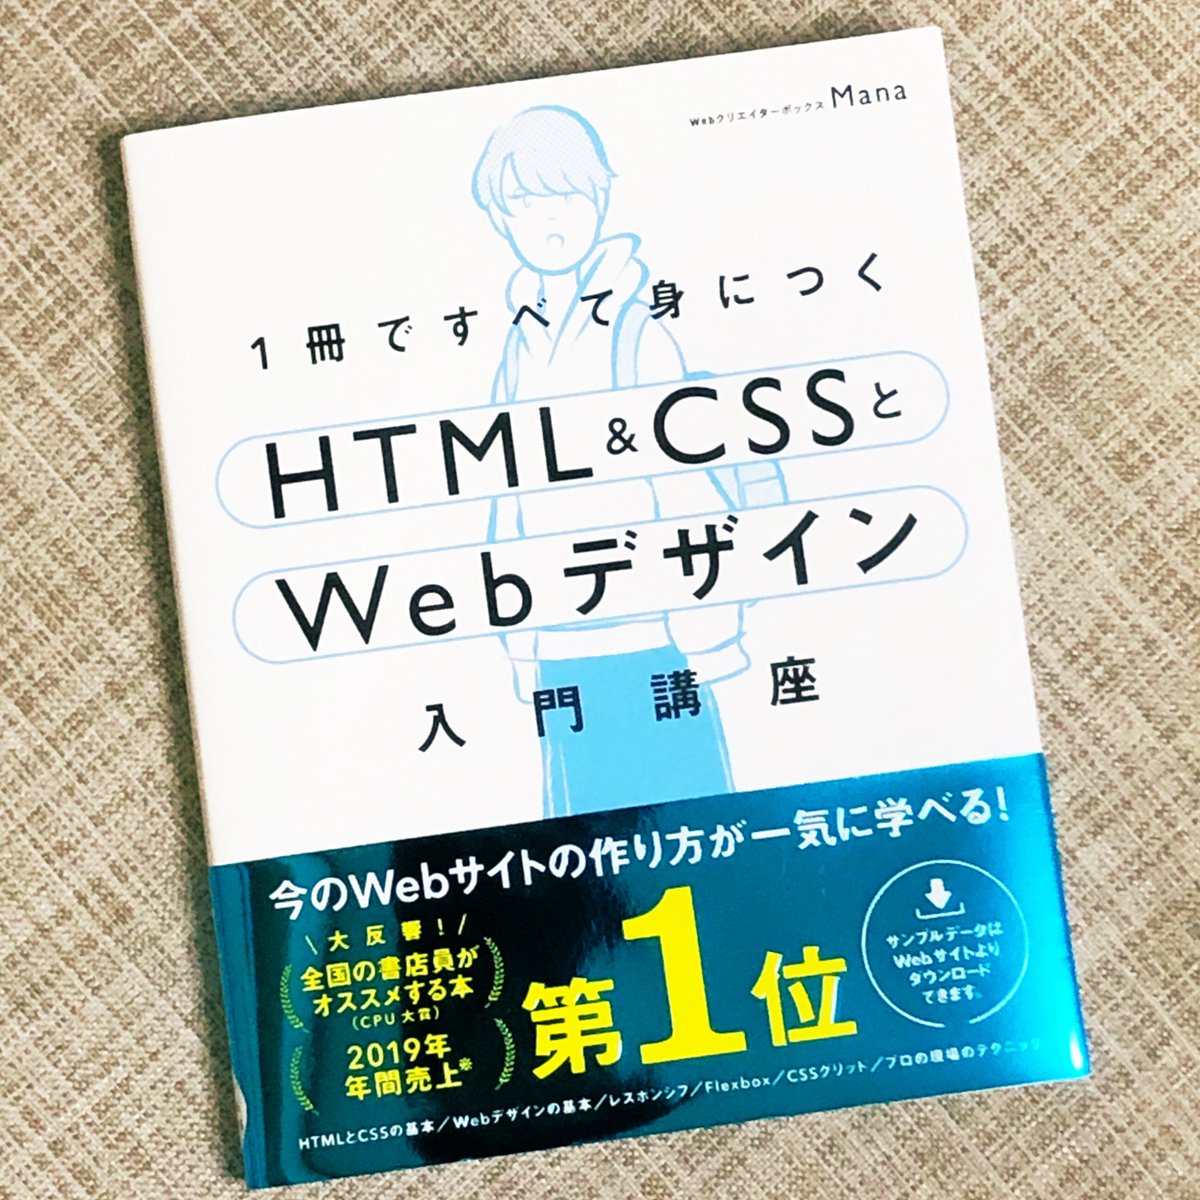 WEBデザイン再入門‼️  Manaさんの「1冊ですべて身につく HTML&CSSとWebデザイン 入門講座」を読みました📕Webサイトの仕組み・HTMLの基本から素敵なサイトの作り方まで解説📝  とてもわかり易い内容で年間売上第1位も納得。そういえば大昔に簡単なWEBサイトを作ったな🙄もう一度挑戦してみようかしら🤔 